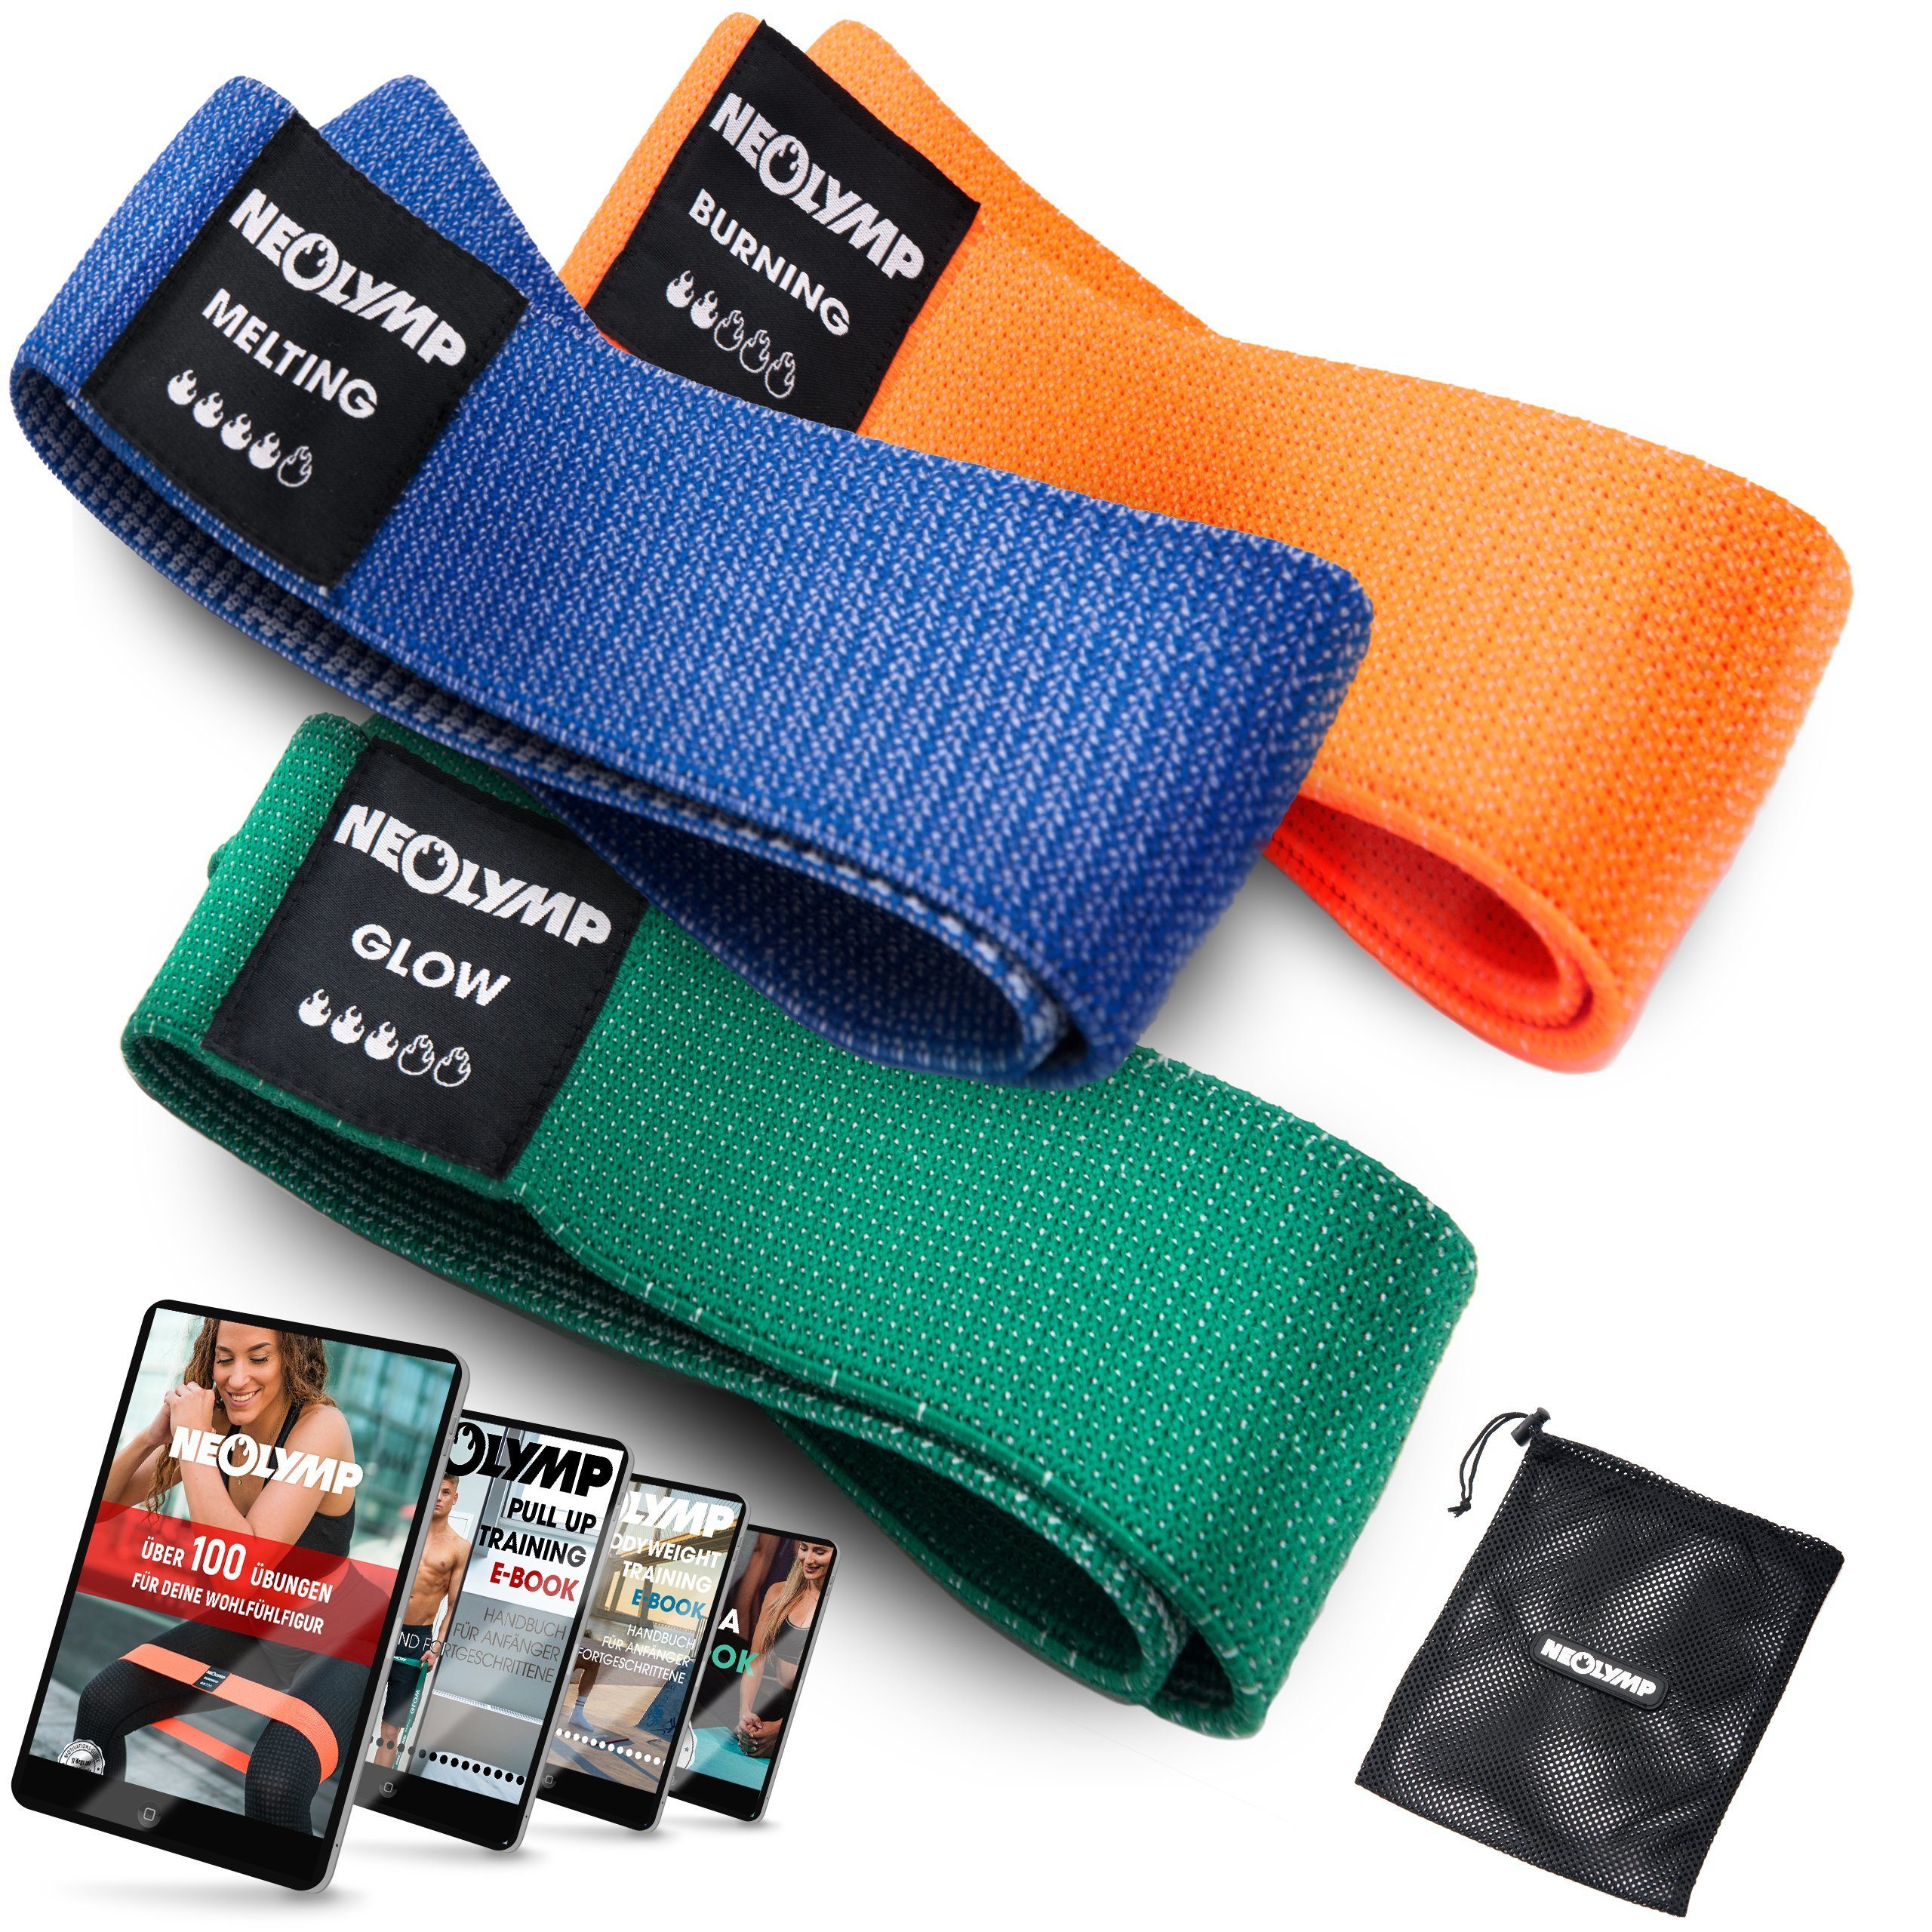 NEOLYMP Trainingsband Premium MinibänderI Fitnessbänder Bauch Beine PoI Trainingsband IMB310, Naturfasern, komfortabel, mit E-Book, langlebig, hygienisch, waschbar 3er-Set